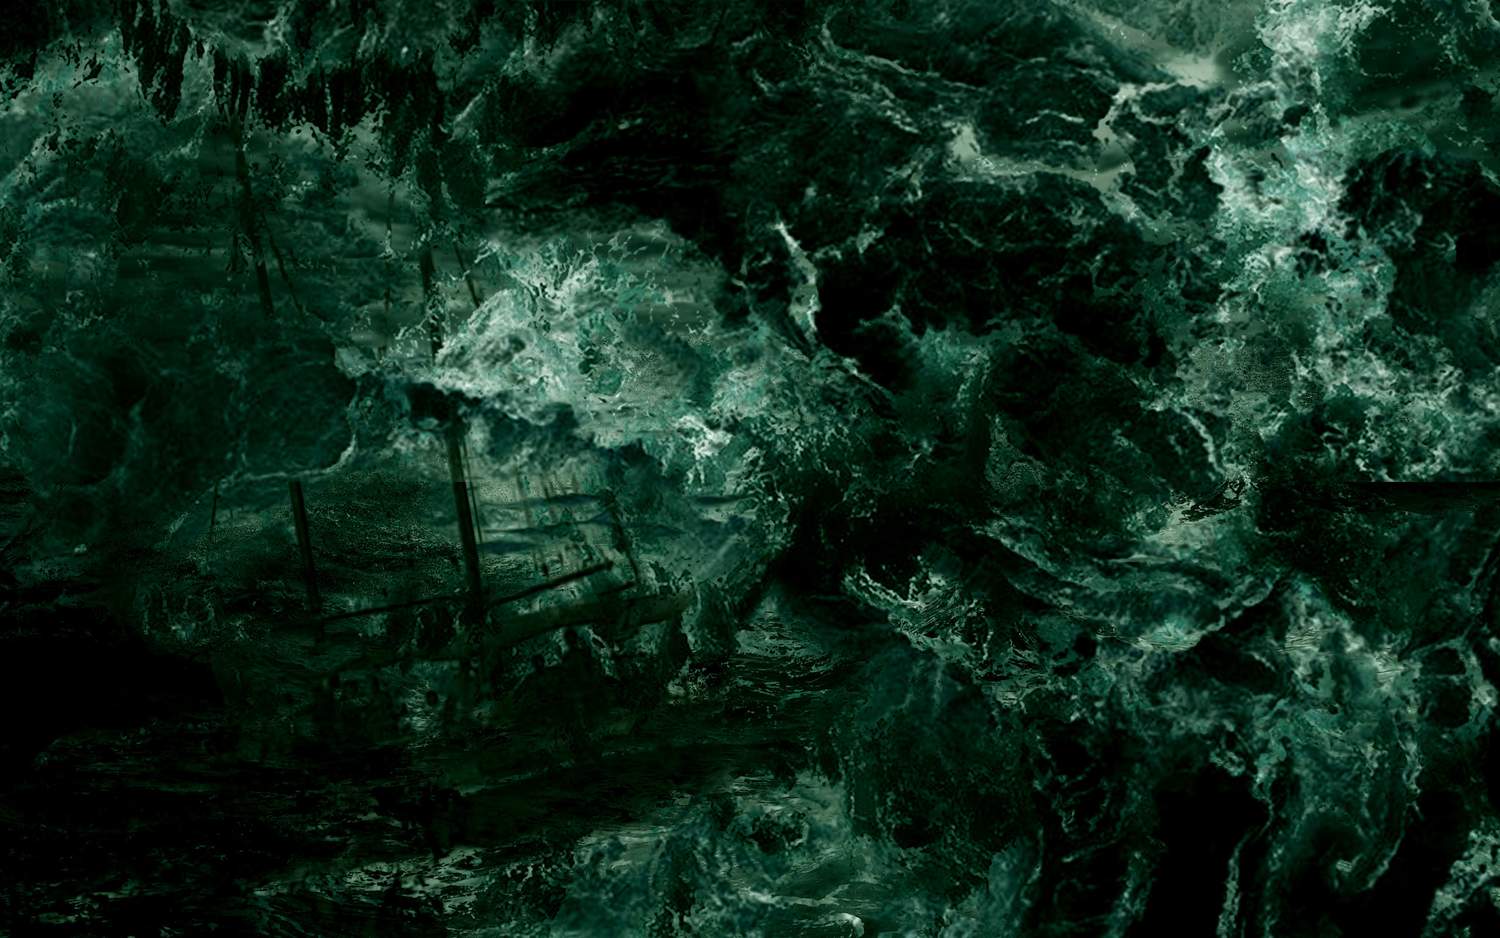 Réadaptation du Mythe de Cthulhu - HP Lovecraft - Montage photo - Édition en réalité augmentée - 2019  © Marie-Liesse de Solages